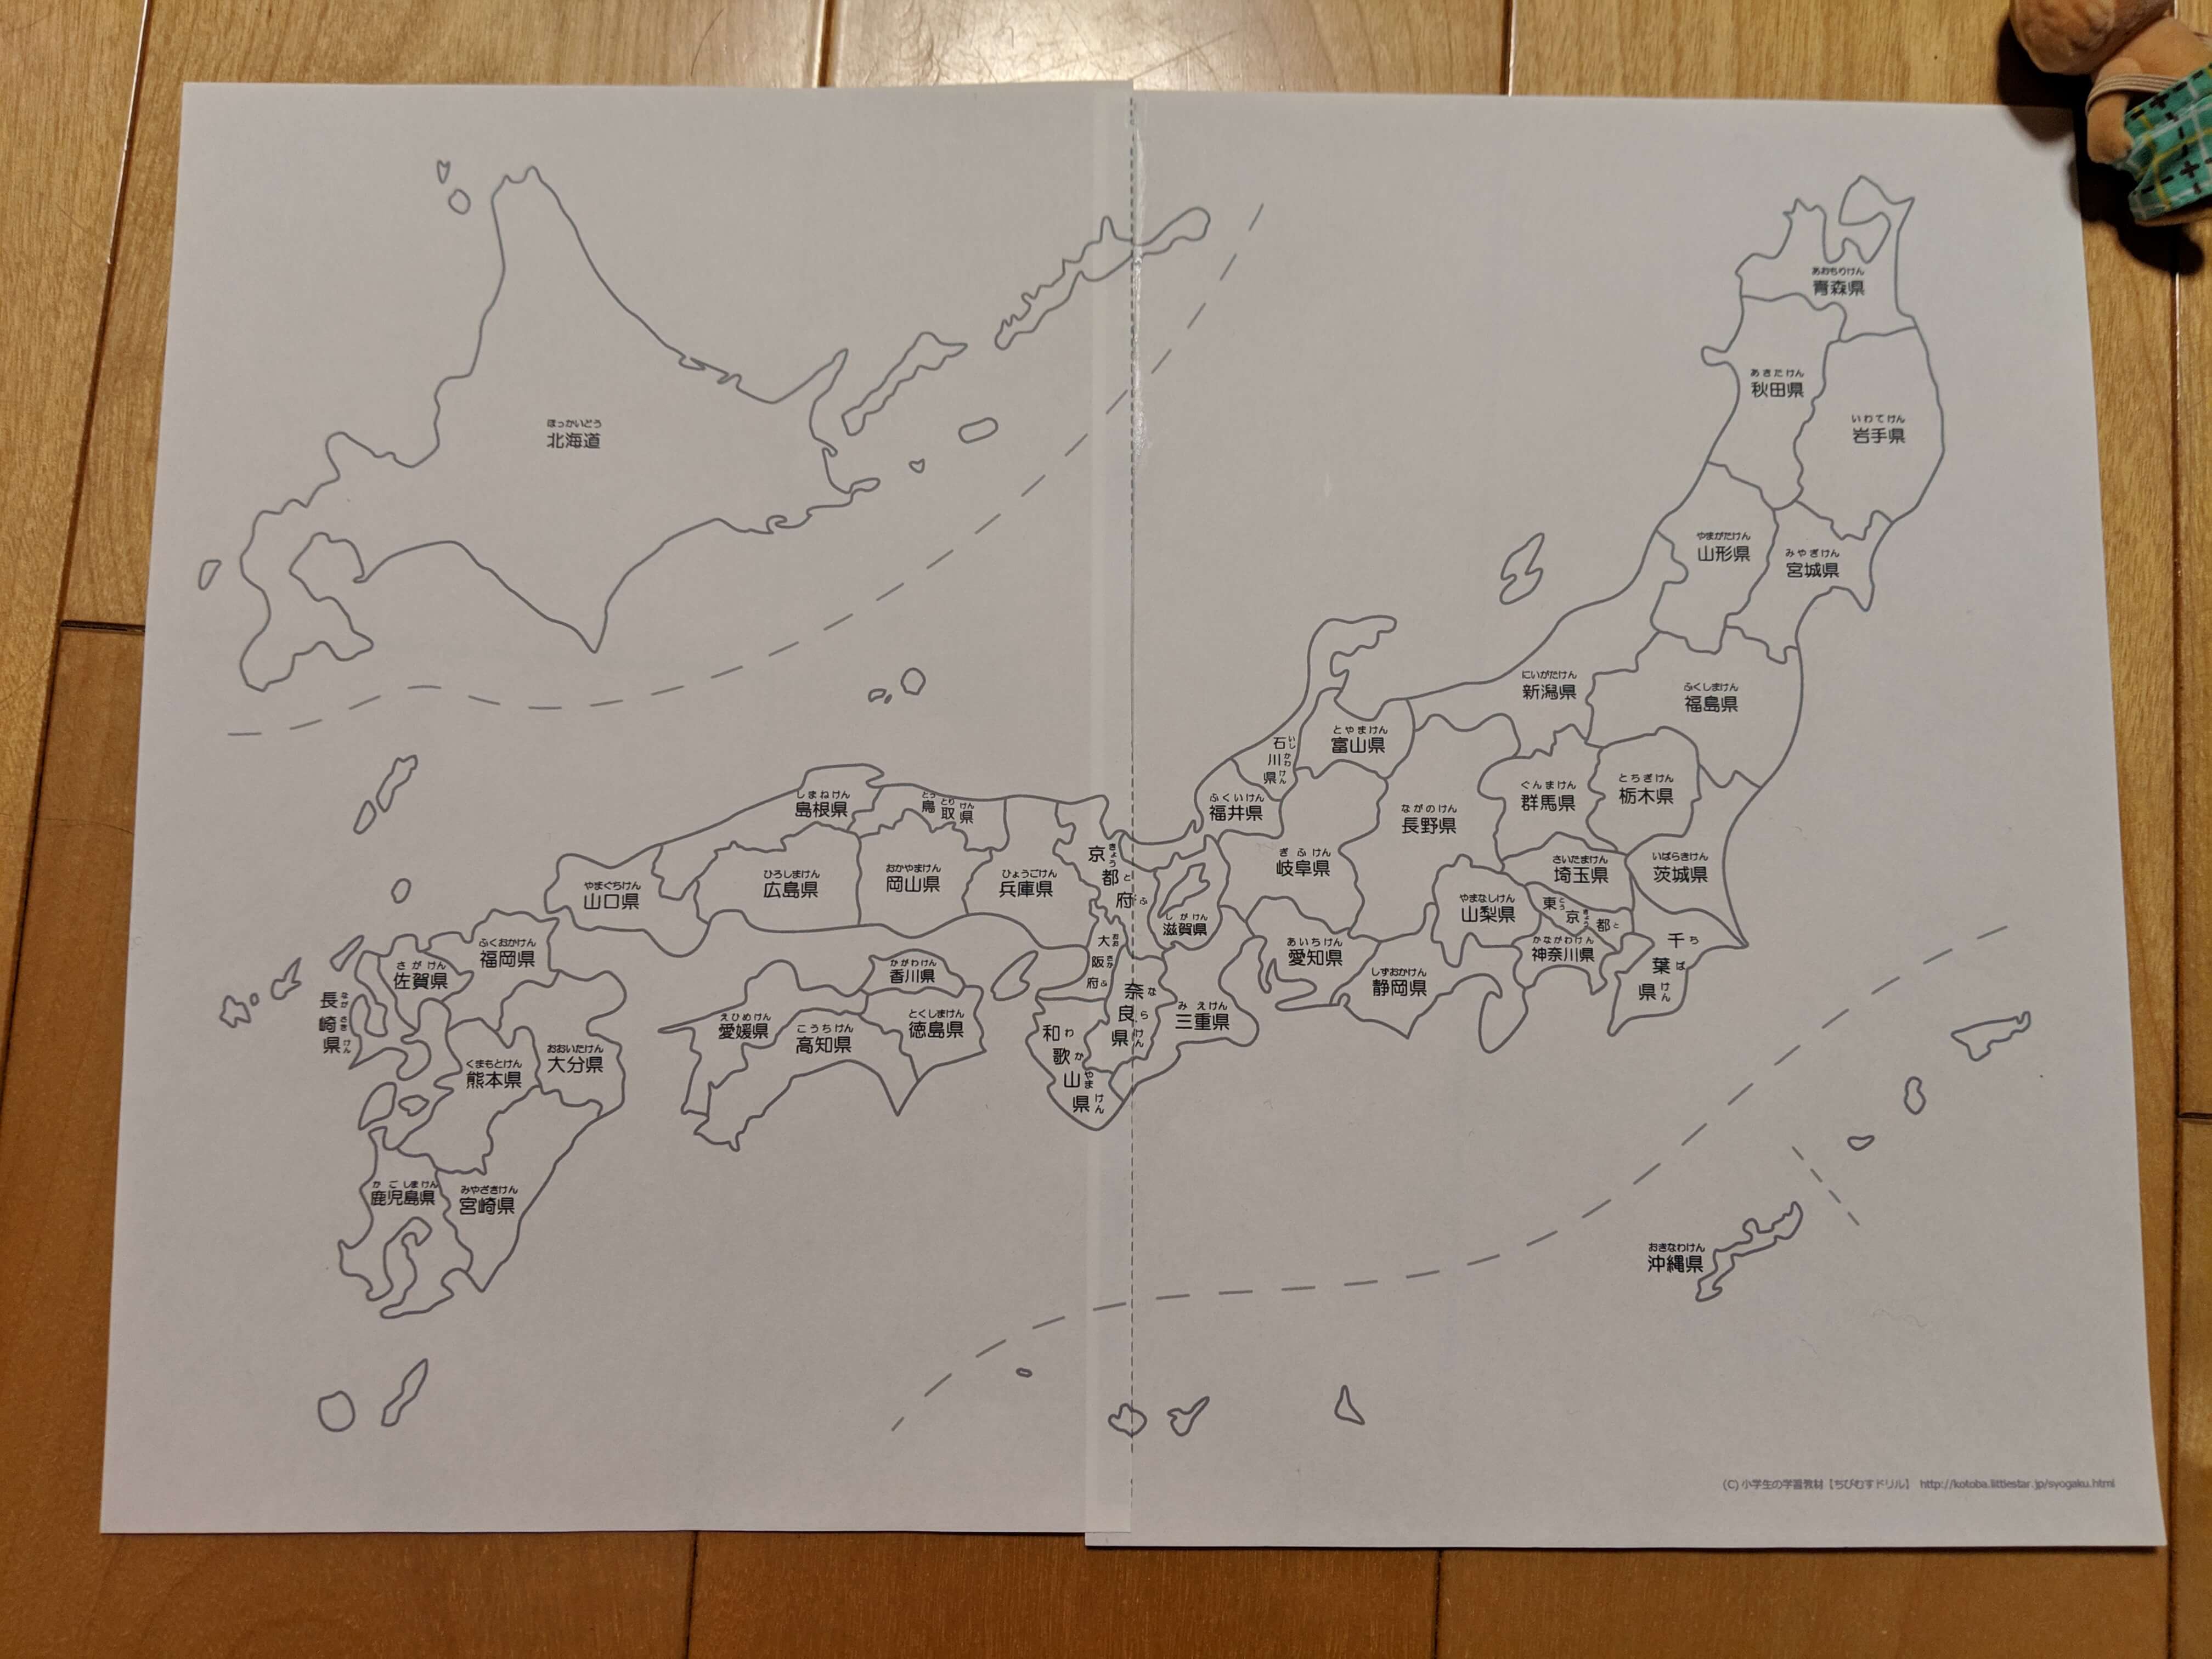 息子と手作り日本地図パズルをつくった Shimabox Blog